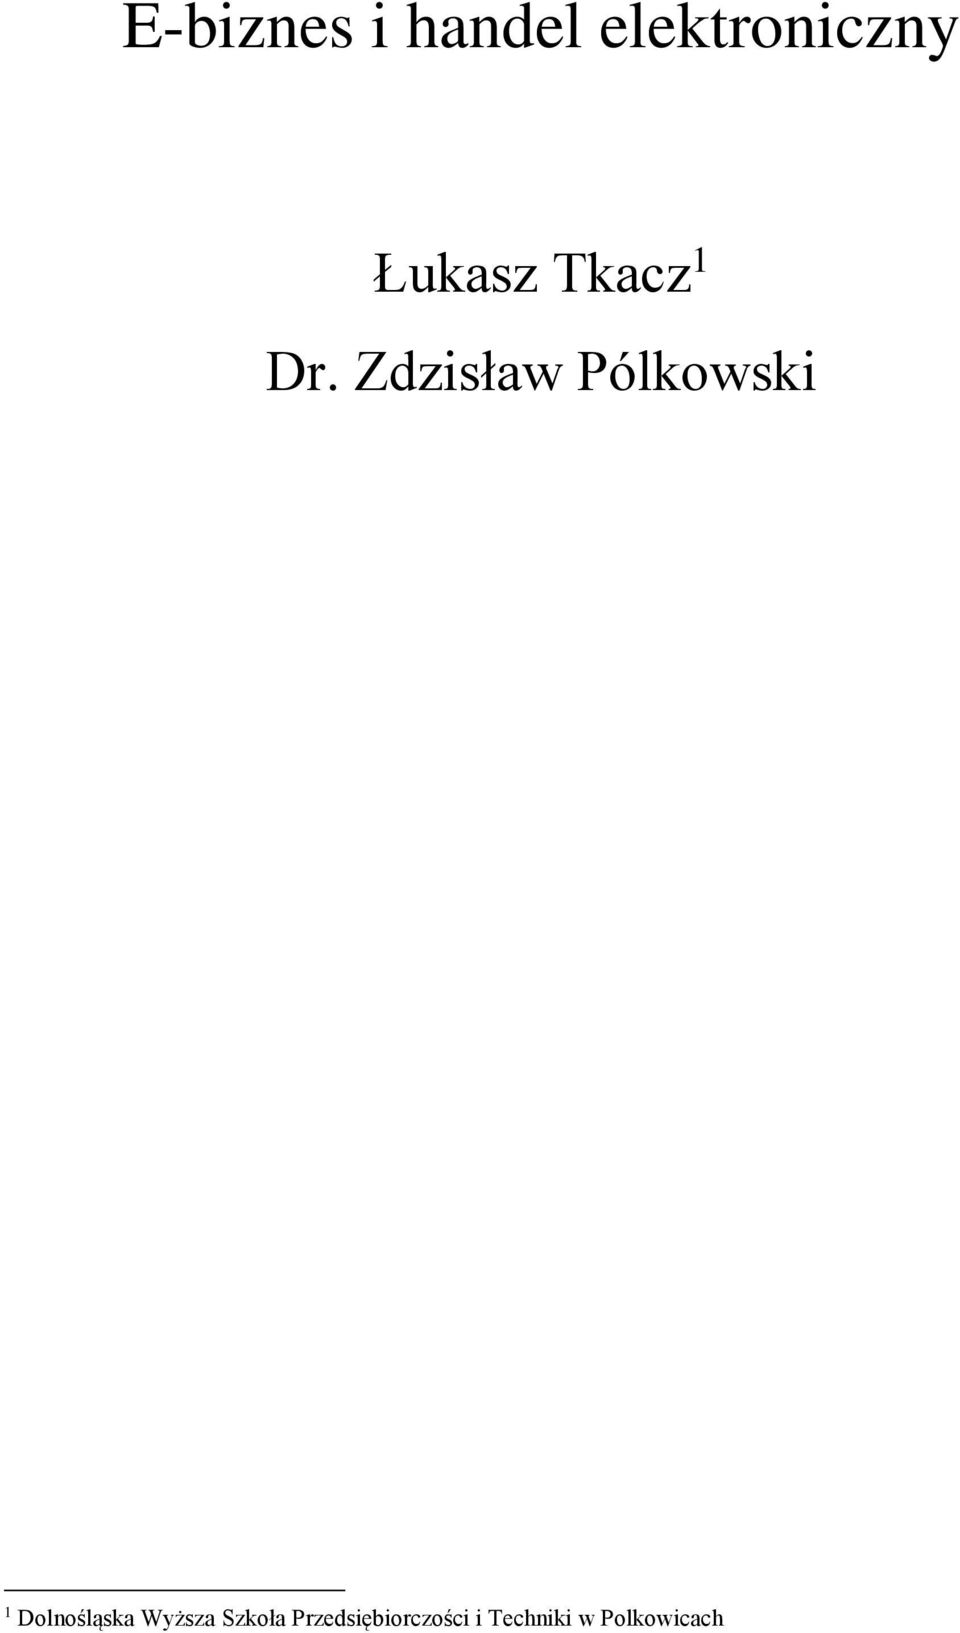 Zdzisław Pólkowski 1 Dolnośląska